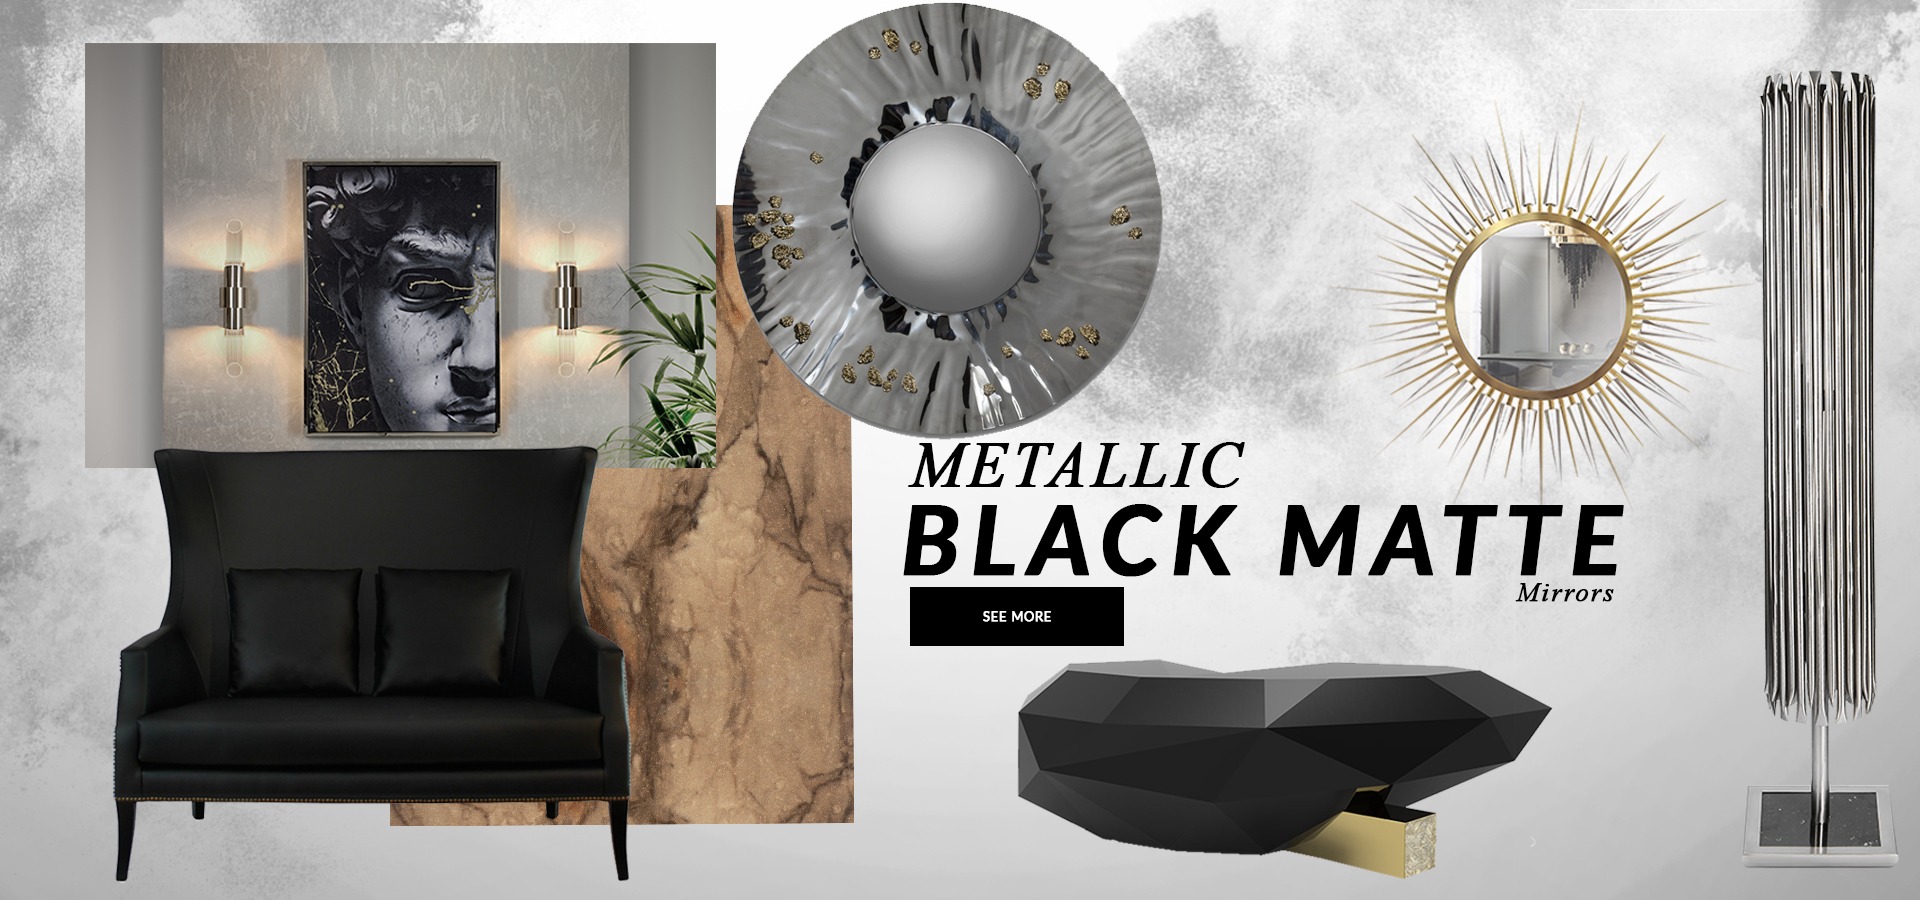 Metallic BlackMatte Trends